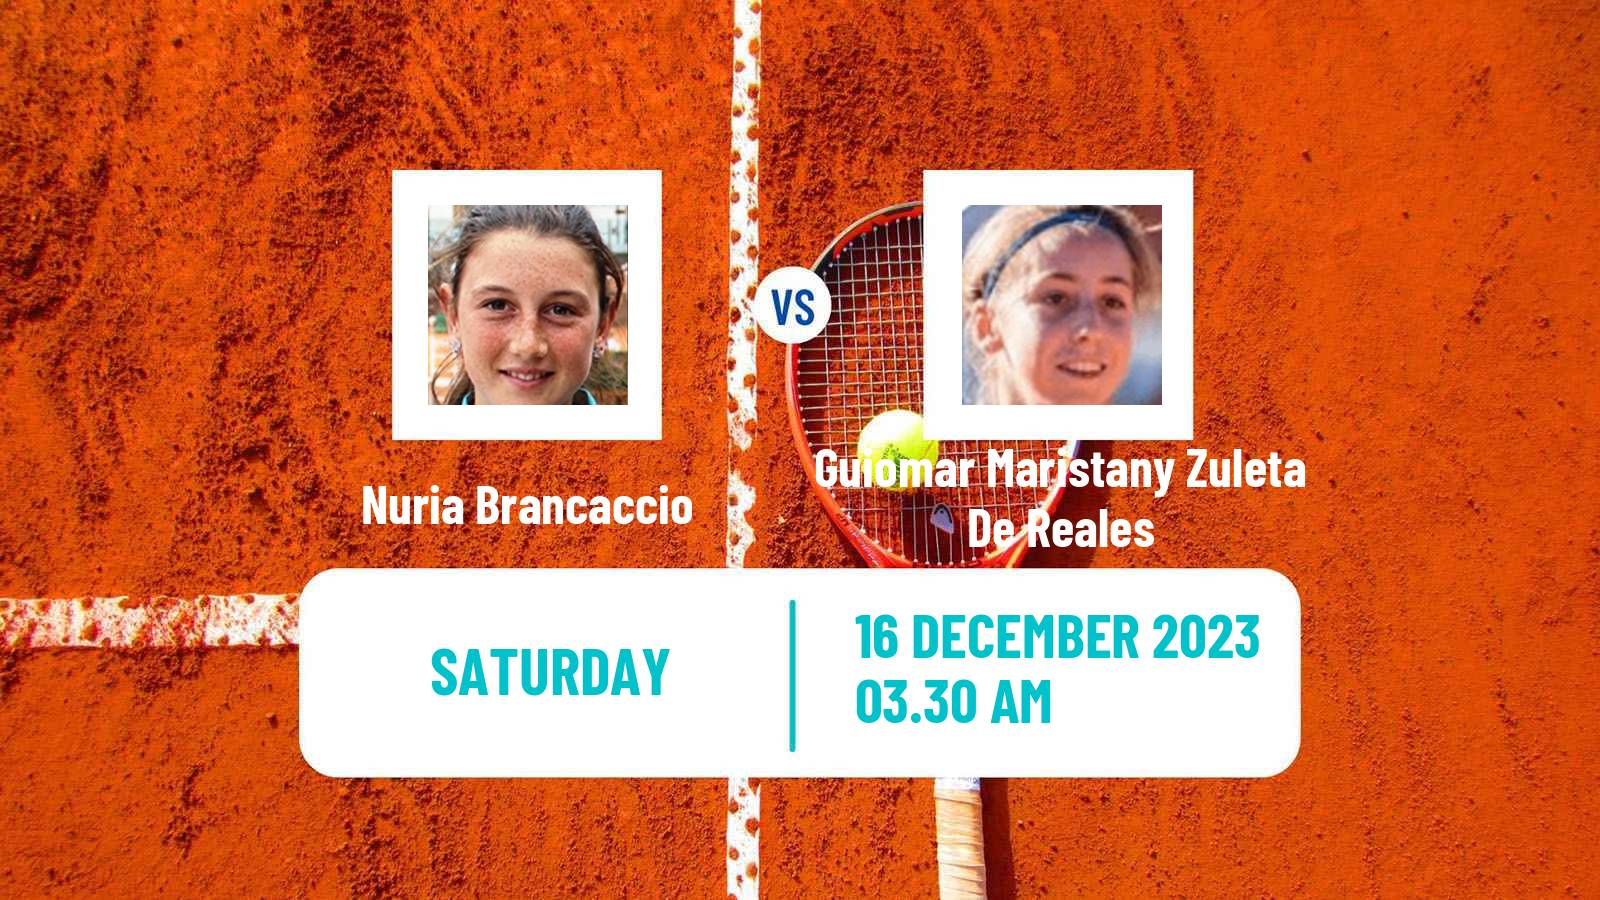 Tennis ITF W25 Monastir 6 Women Nuria Brancaccio - Guiomar Maristany Zuleta De Reales